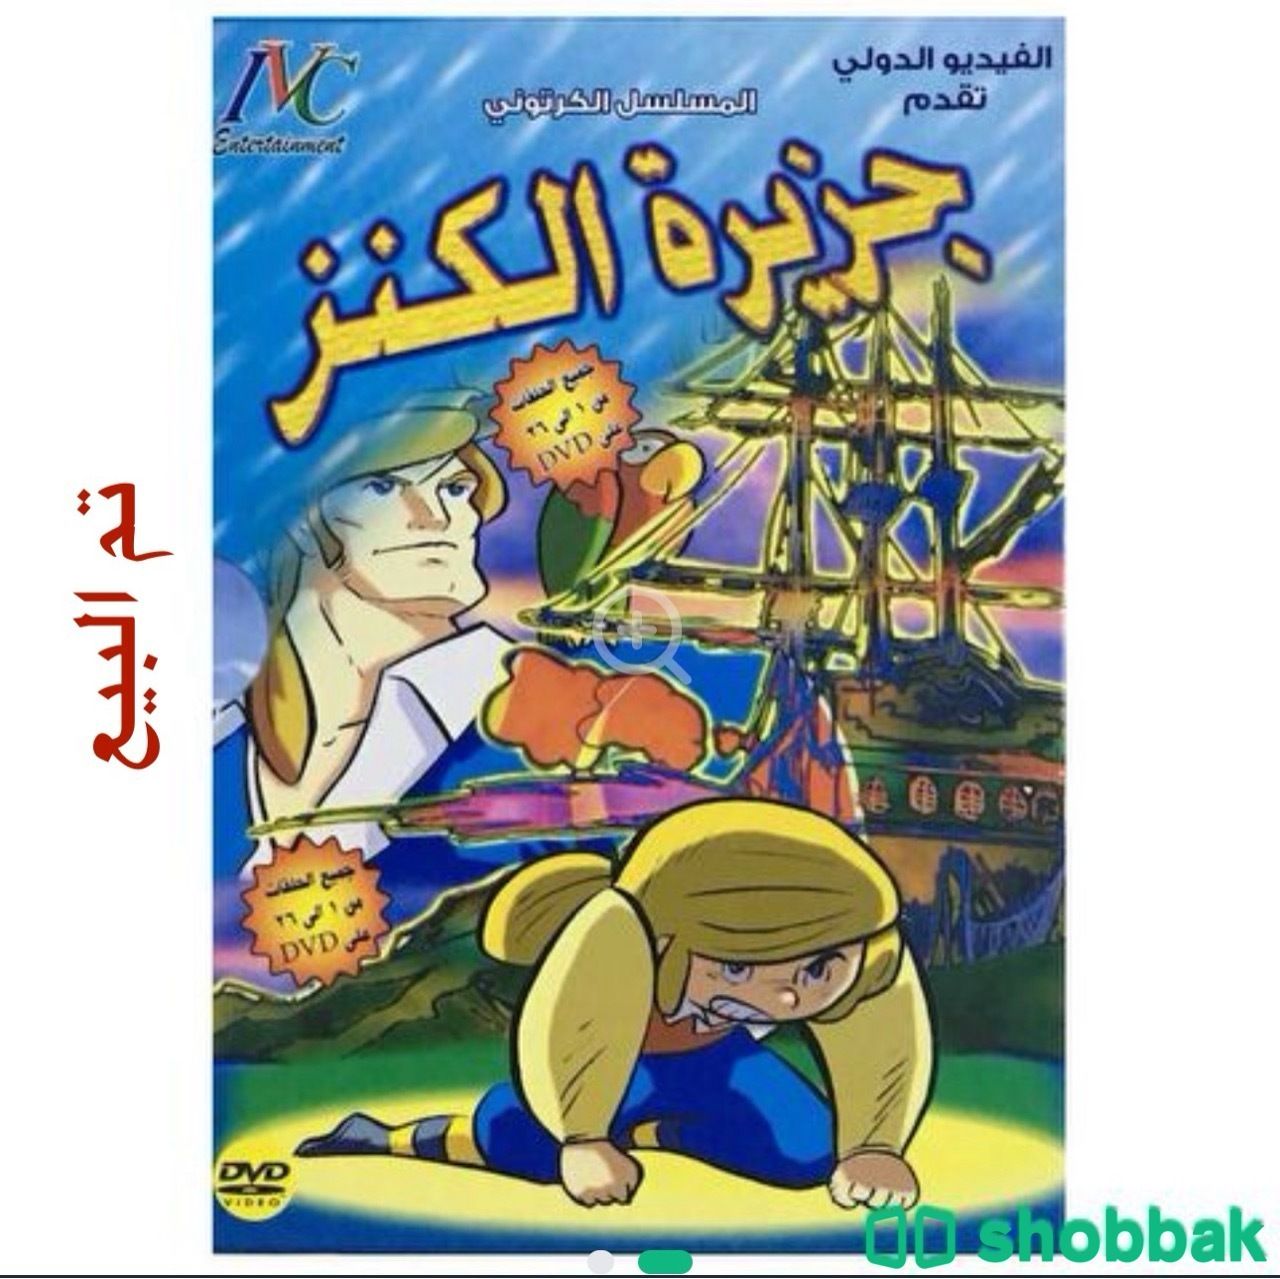 مسلسل جزيرة الكنز على (DVD) Shobbak Saudi Arabia